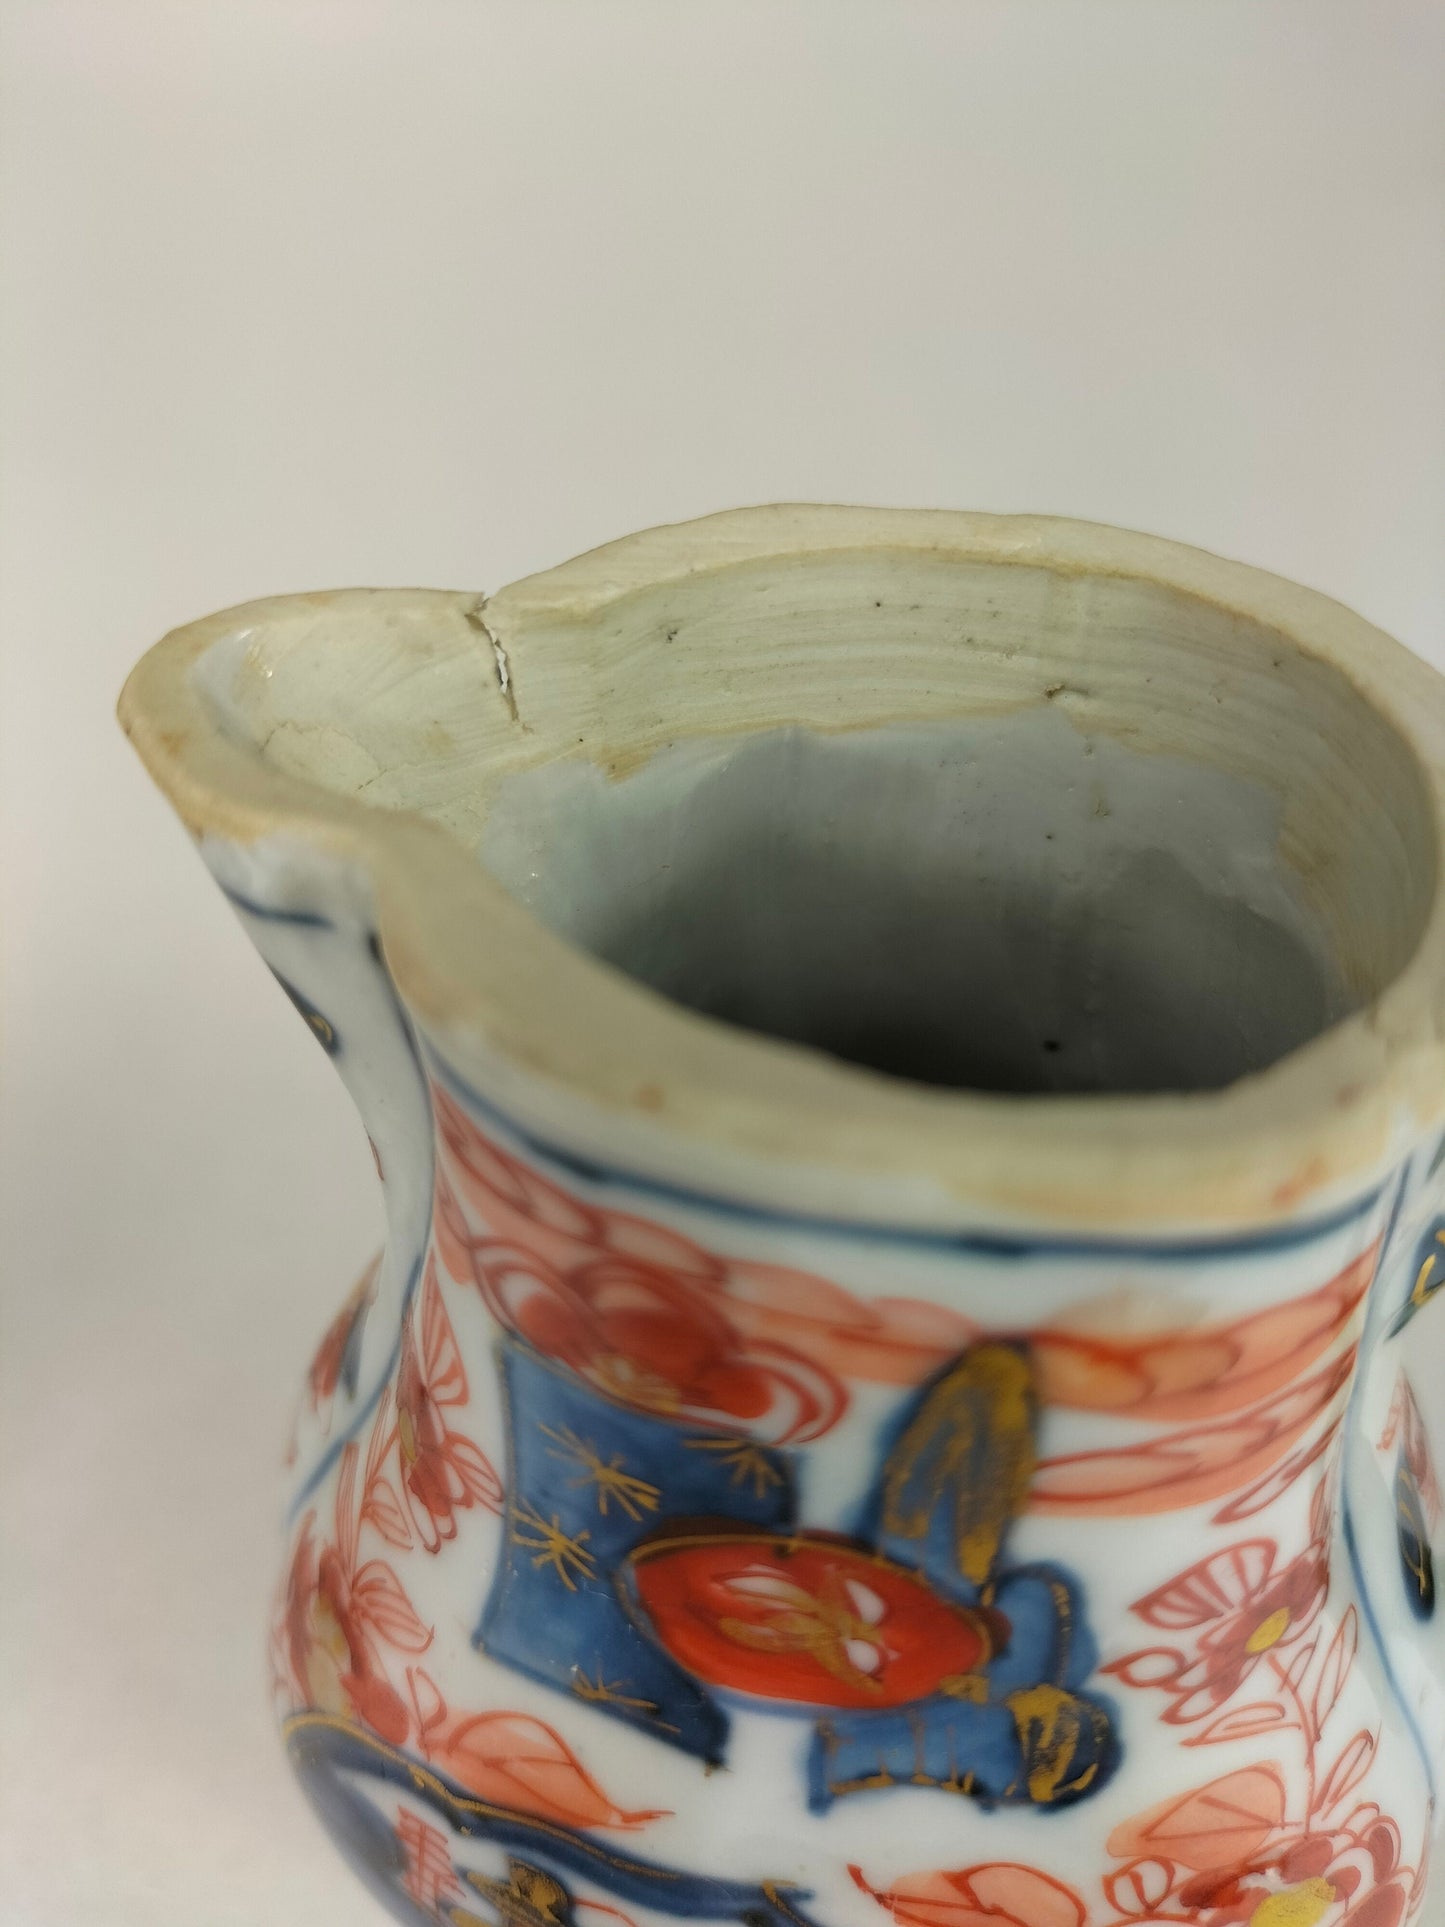 علبة شاي إيماري صيني عتيق مزينة بزخارف نباتية // عهد أسرة تشينغ - القرن الثامن عشر - كانغشي